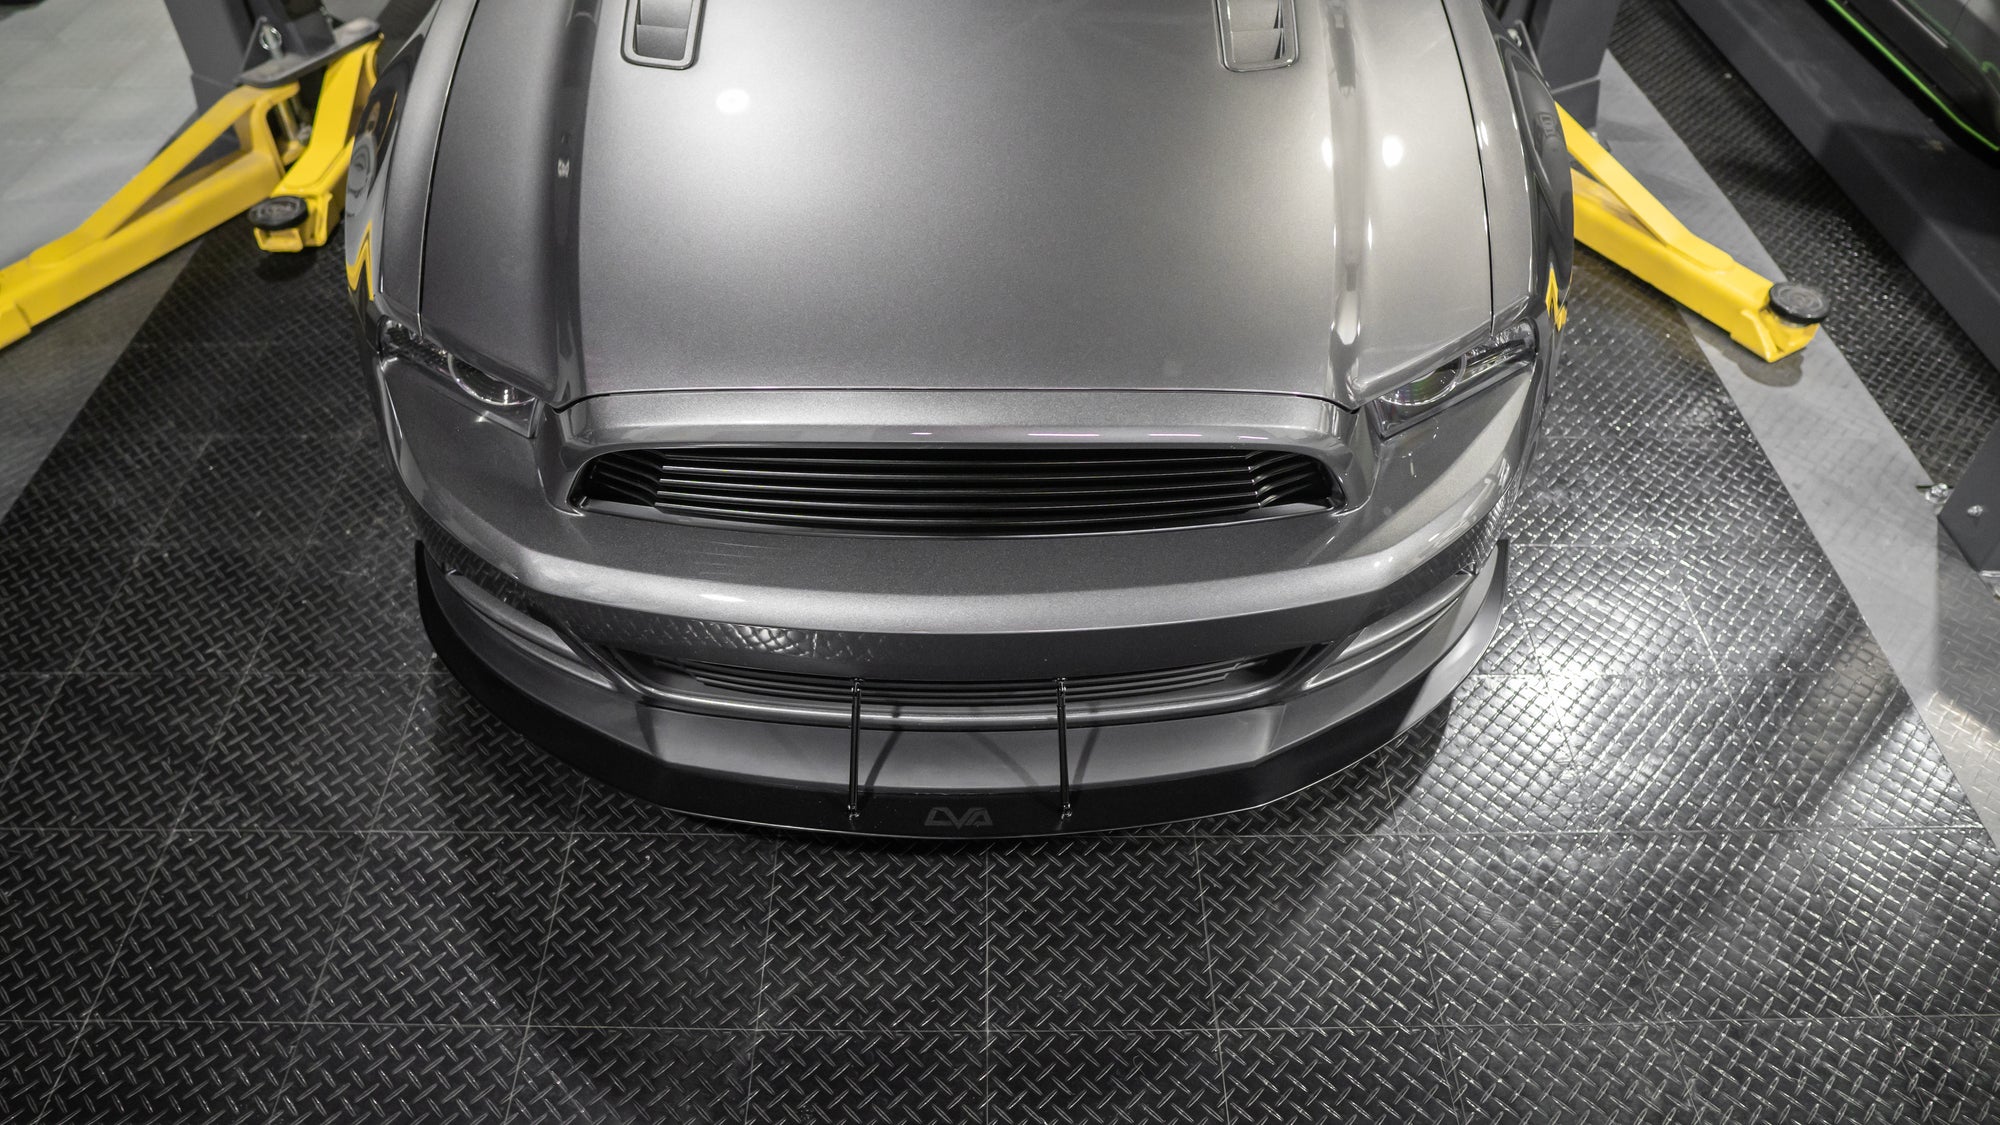 LVA 2013-2014 Ford Mustang Roush Front Splitter